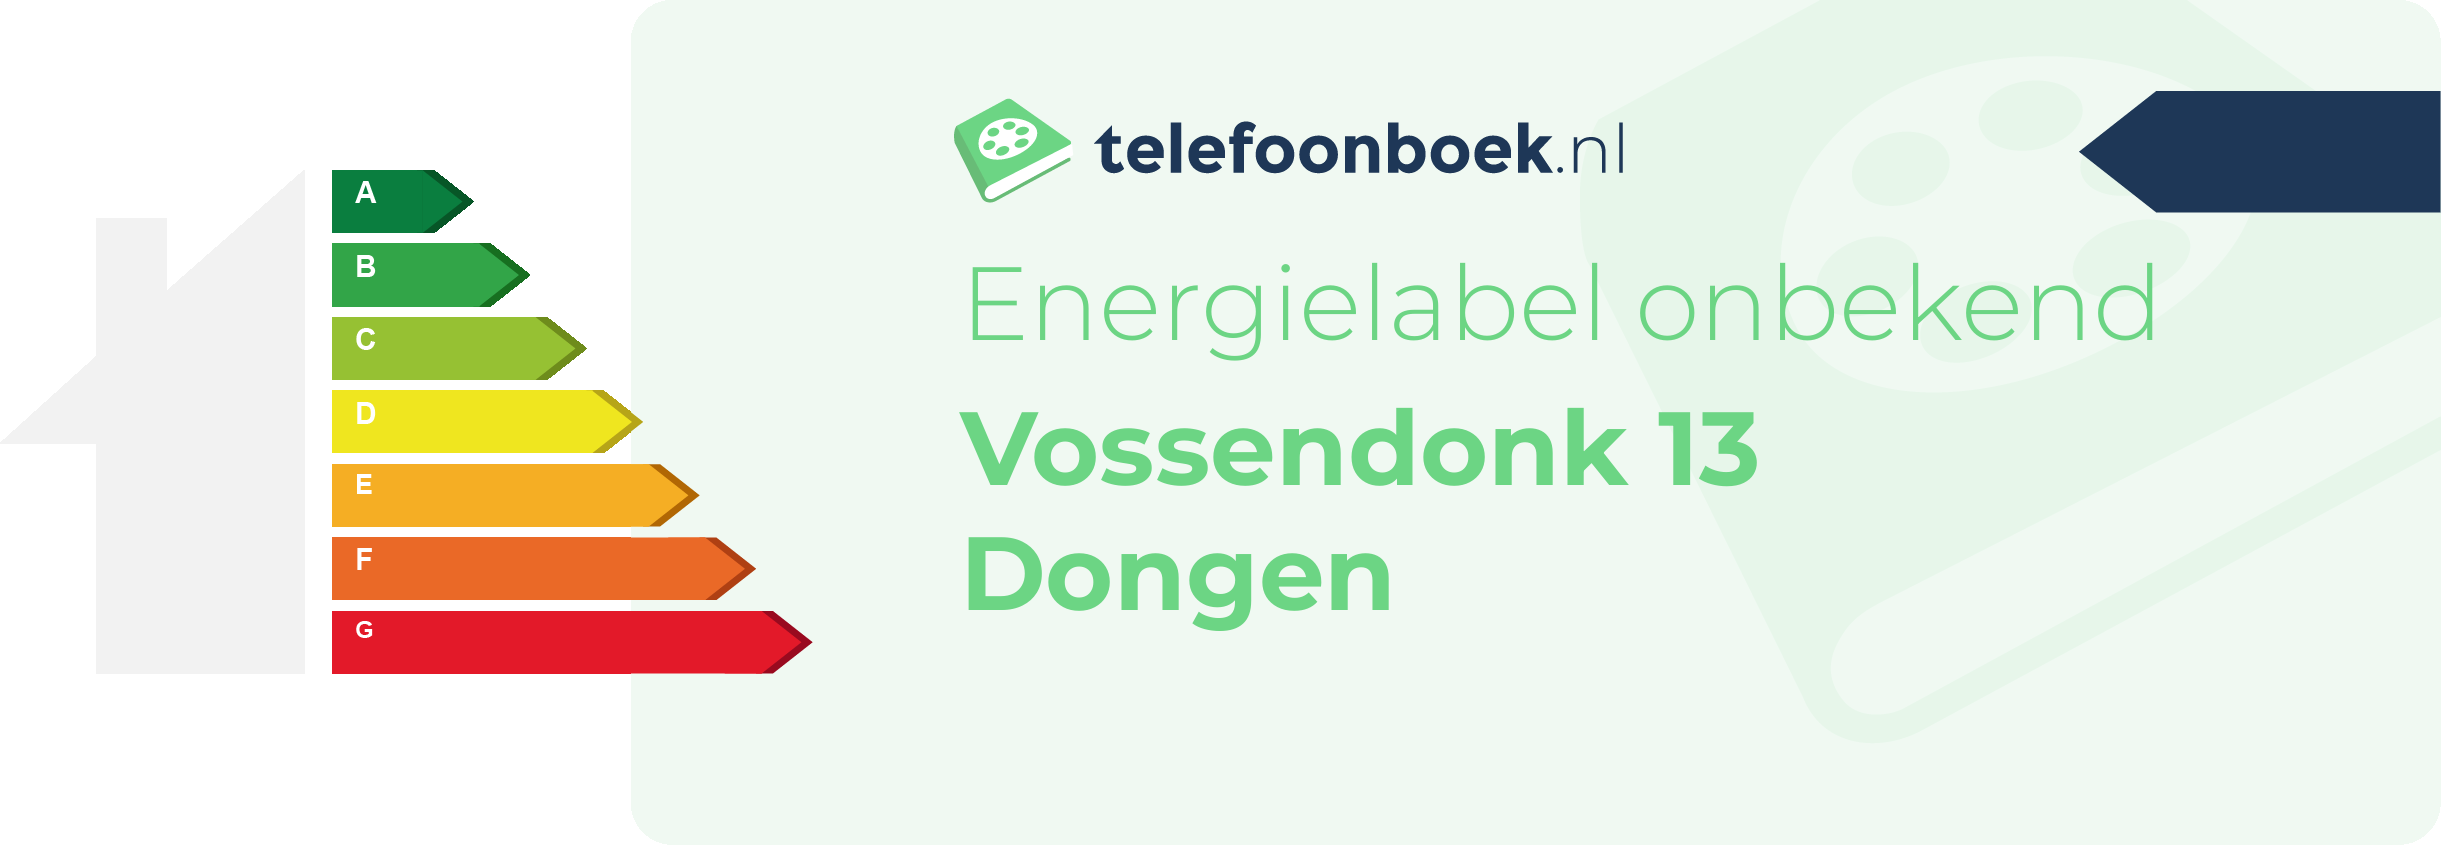 Energielabel Vossendonk 13 Dongen